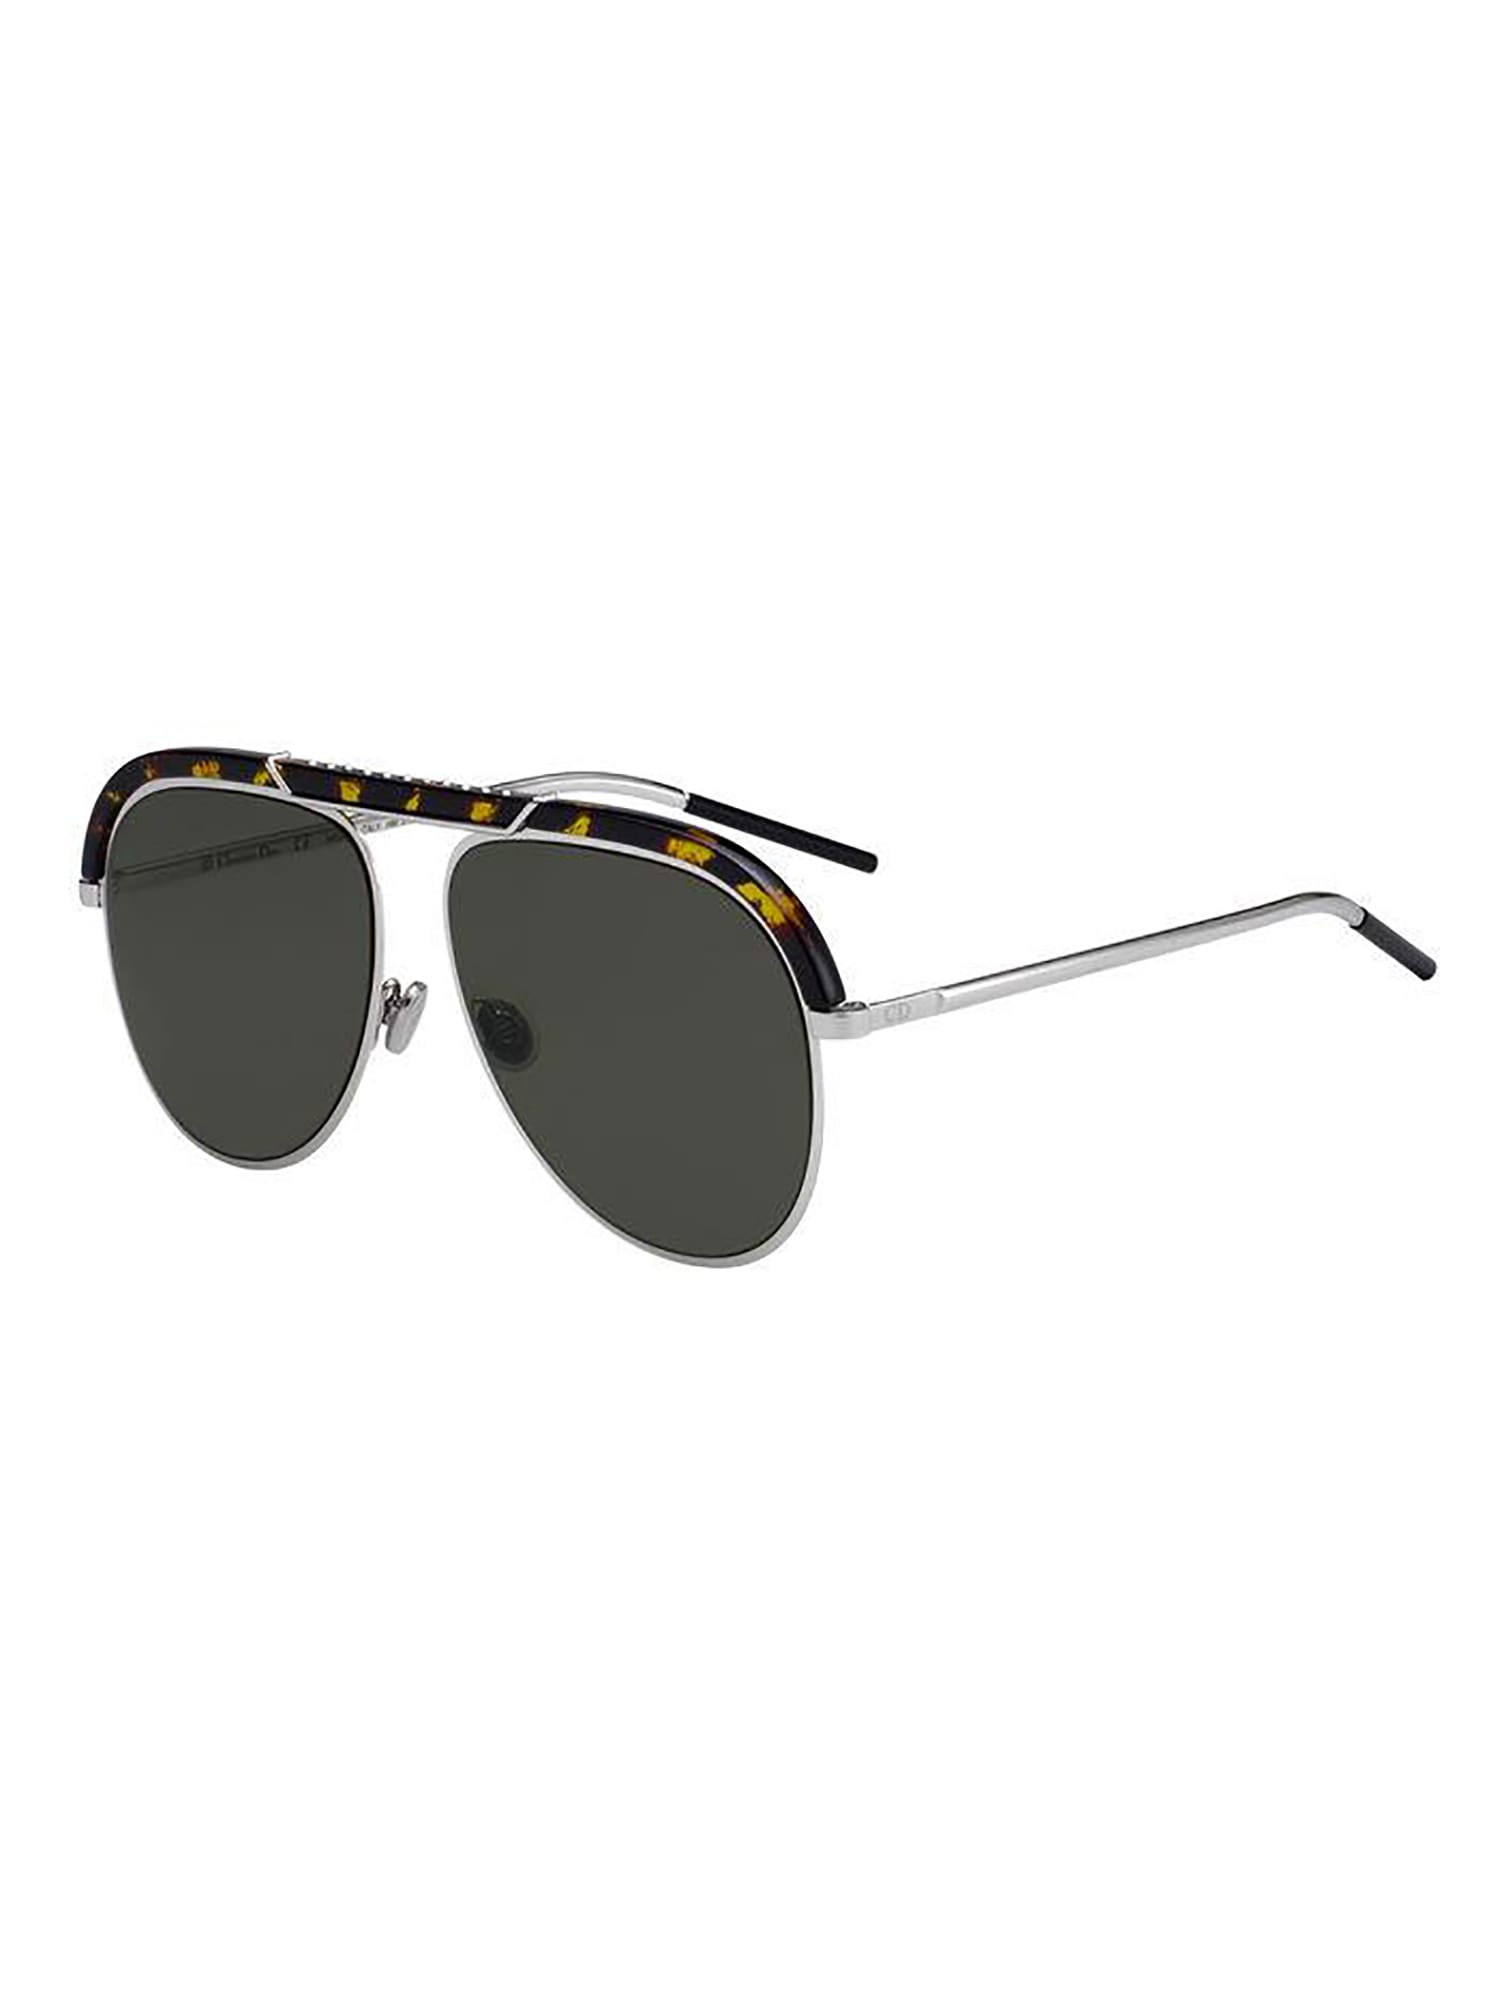 DIORDESERTIC Sunglasses